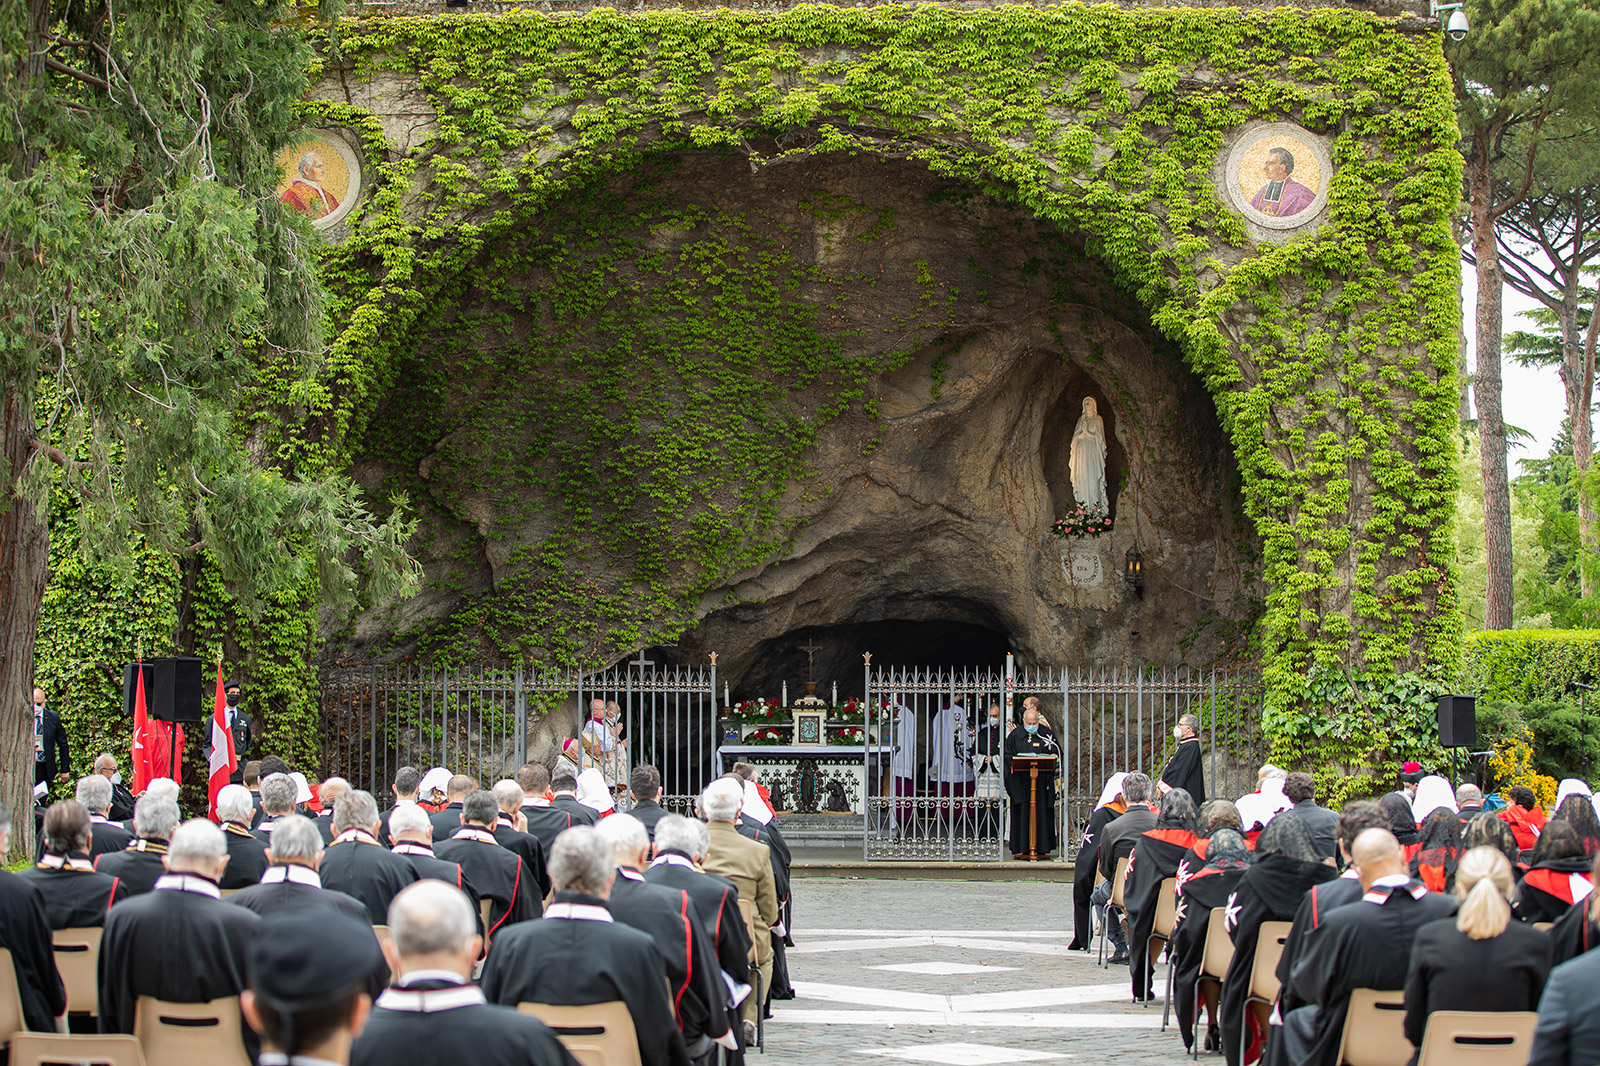 Santa Messa in unione spirituale con la Madonna di Lourdes